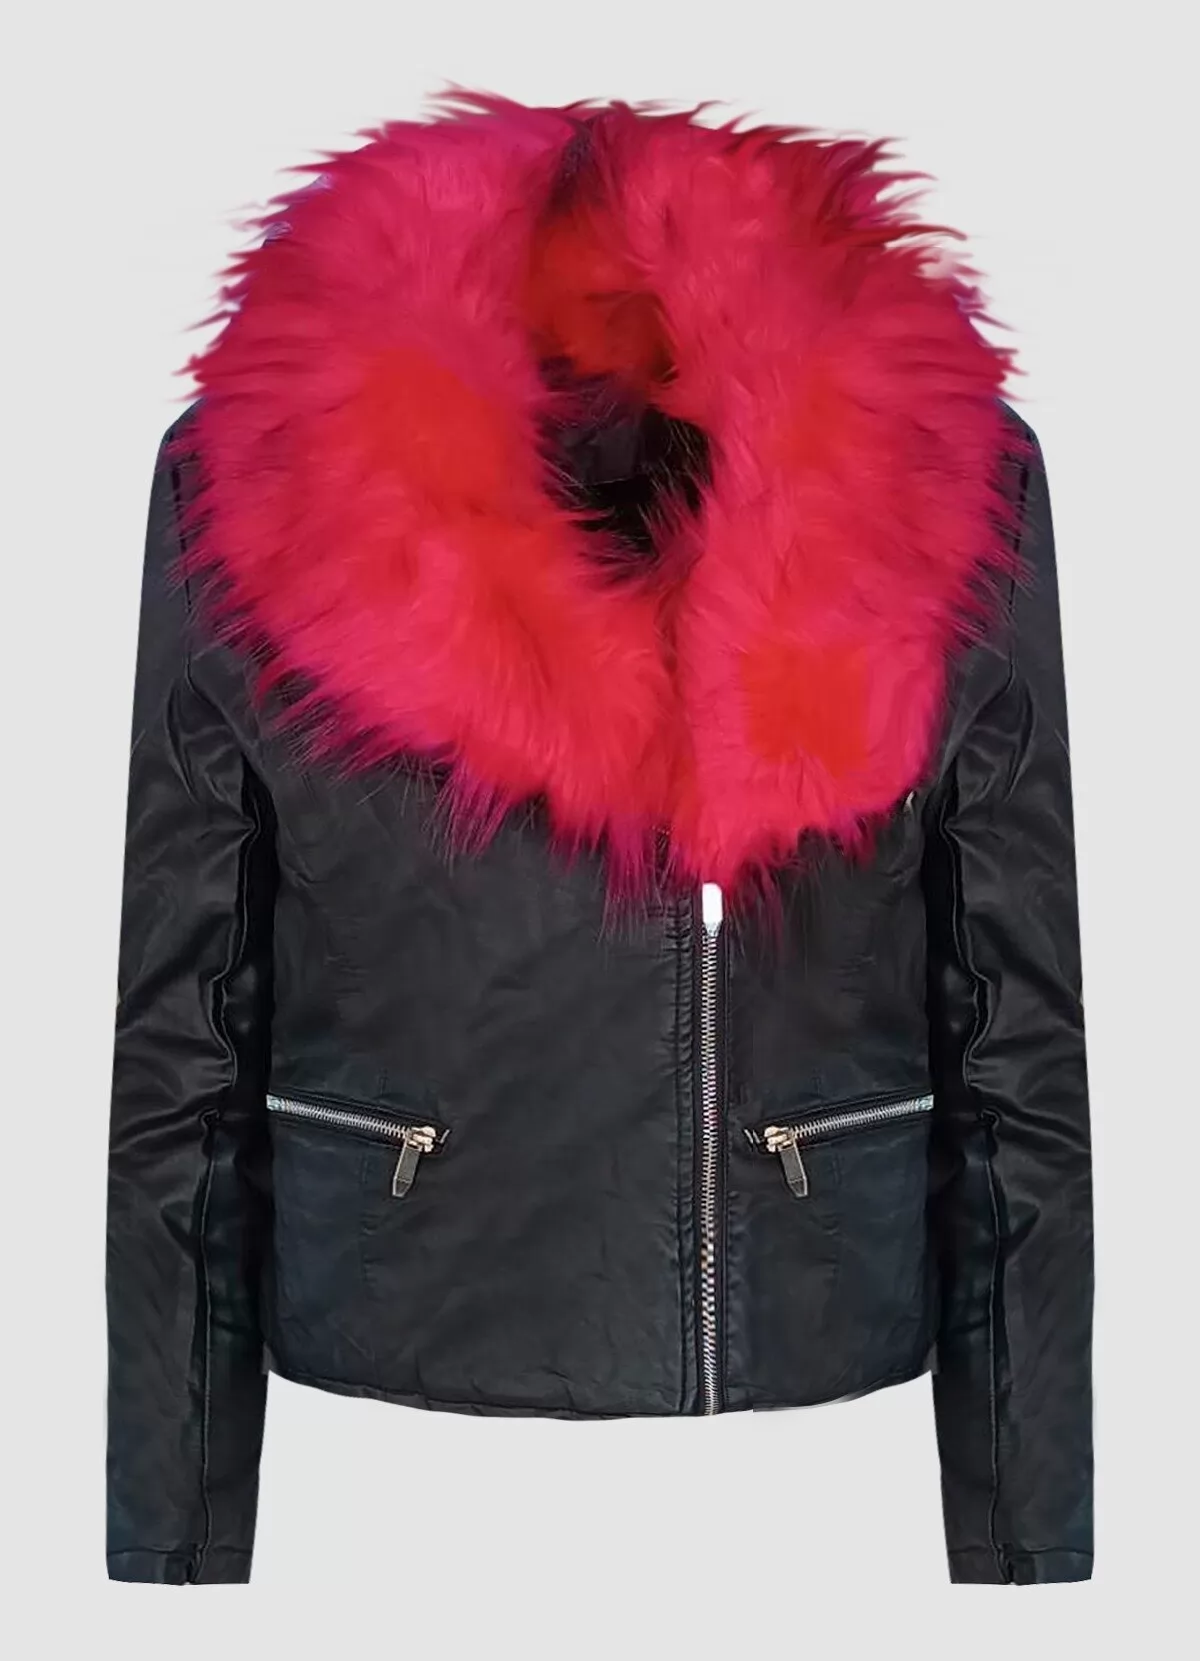 δερματίνη jacket με φούξια αφαιρούμενη γούνα στο γιακά - Parizianista.gr